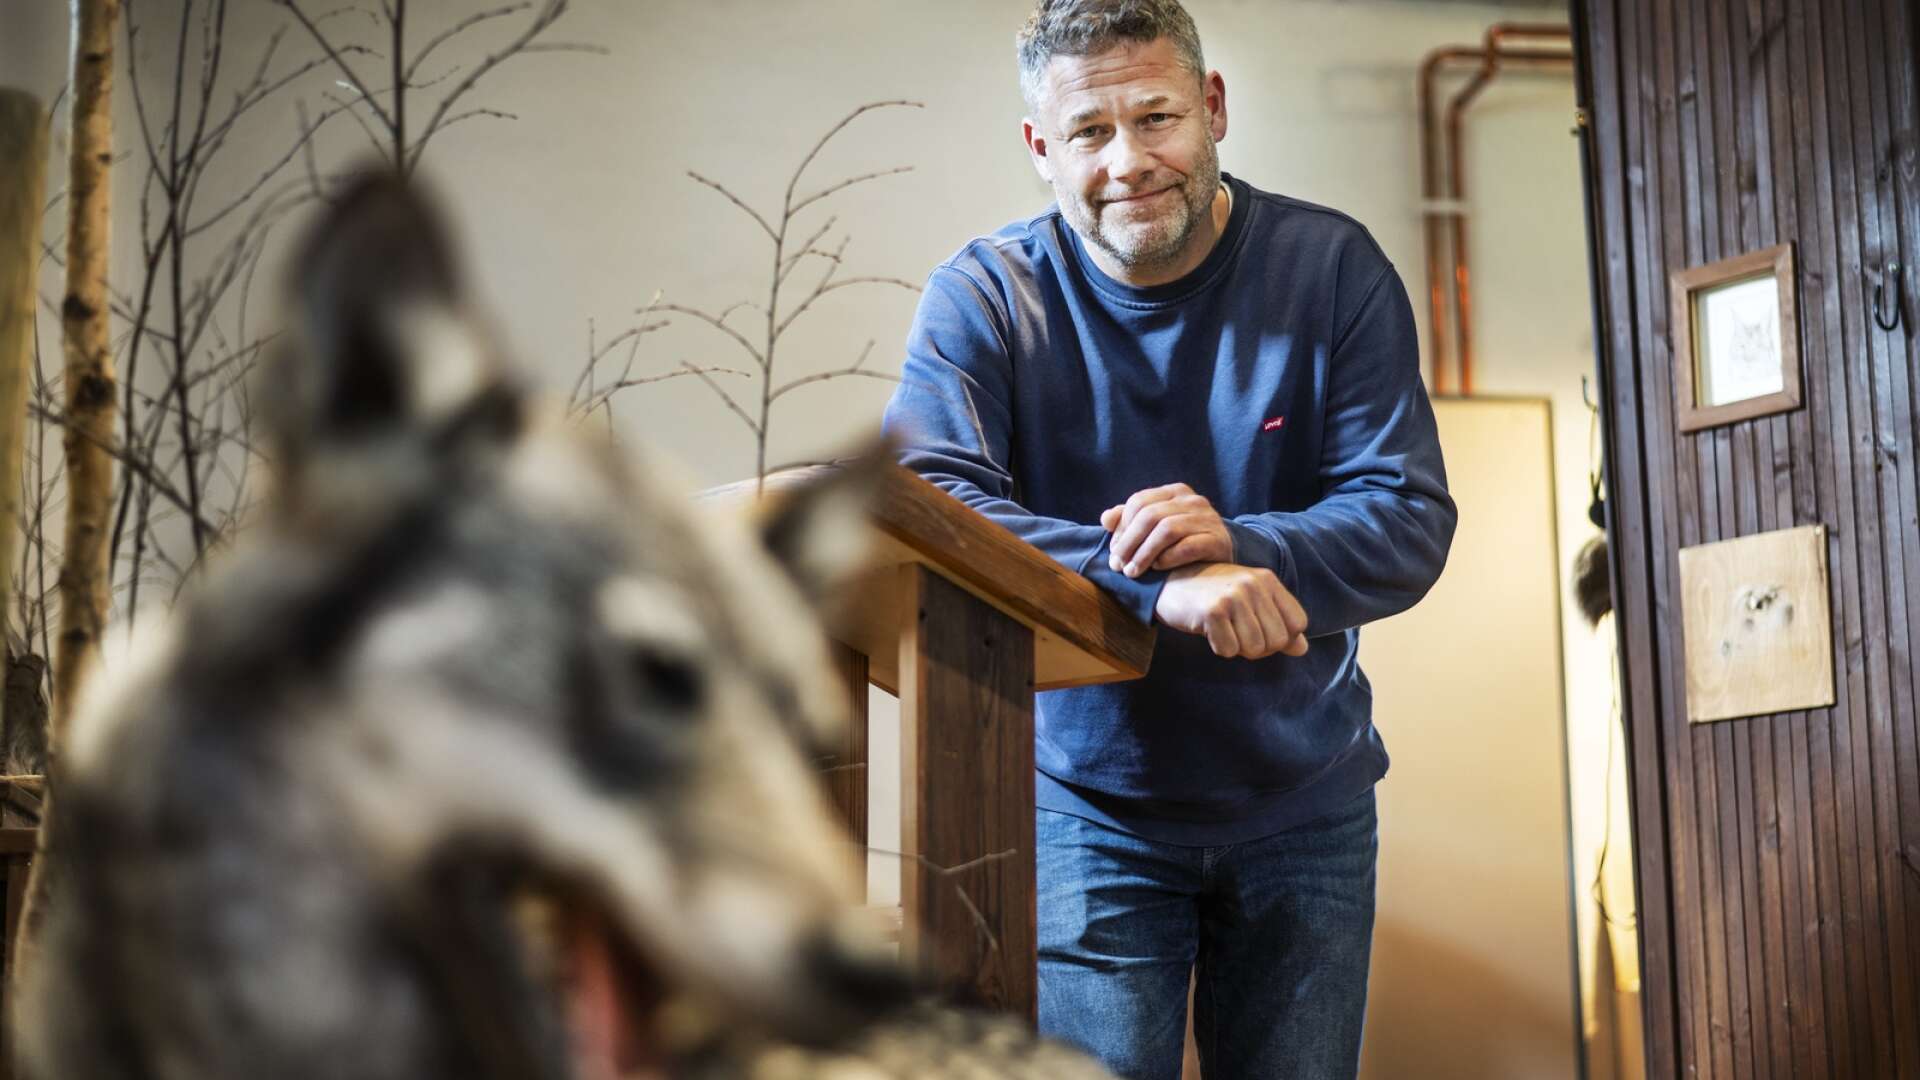 Jens Frank har forskat om varg i över 25 år och menar att det inte finns något rimligt skäl att tro på utplanteringsteorin. ”Statstjänstemän är inte direkt kända för att agera rebelliskt”, konstaterar han. 